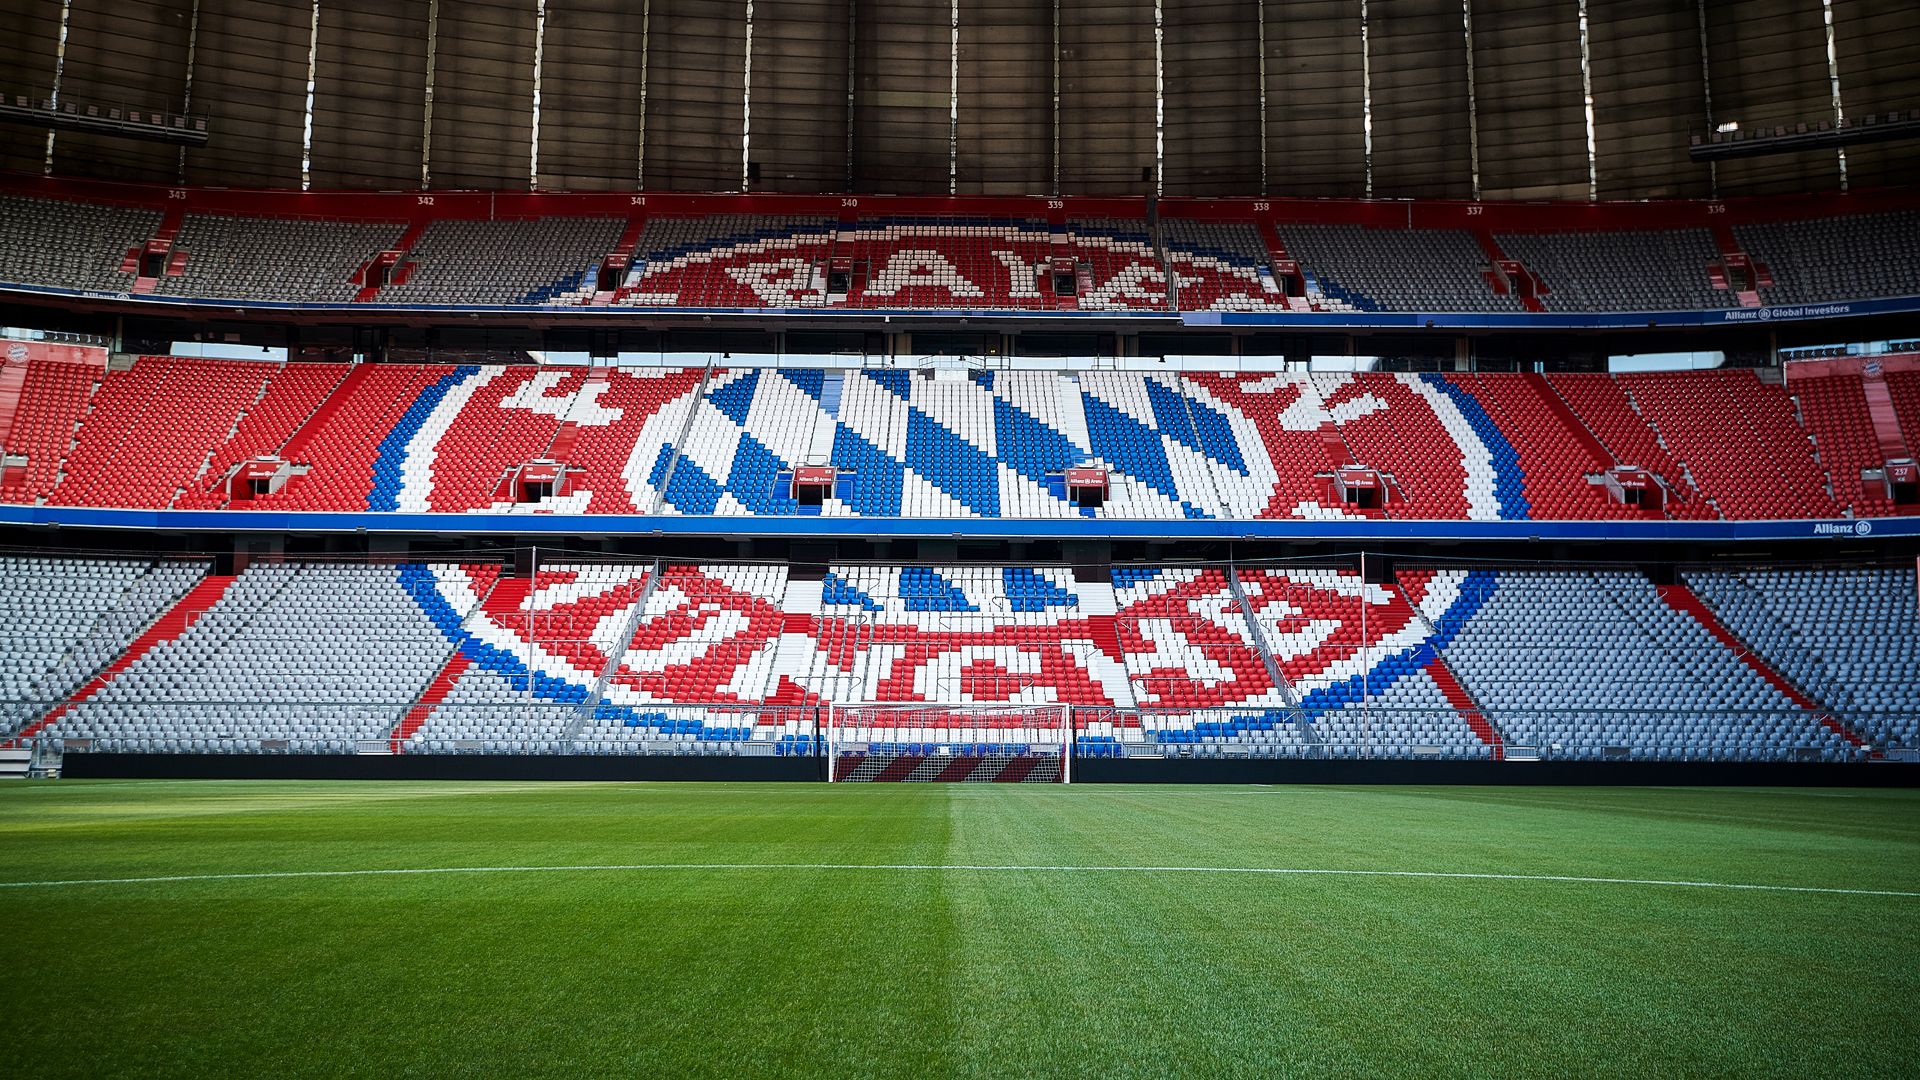  FC Bayern München Hintergrundbild 1920x1080. Wallpaper: Allianz Arena Bildschirmhintergrund